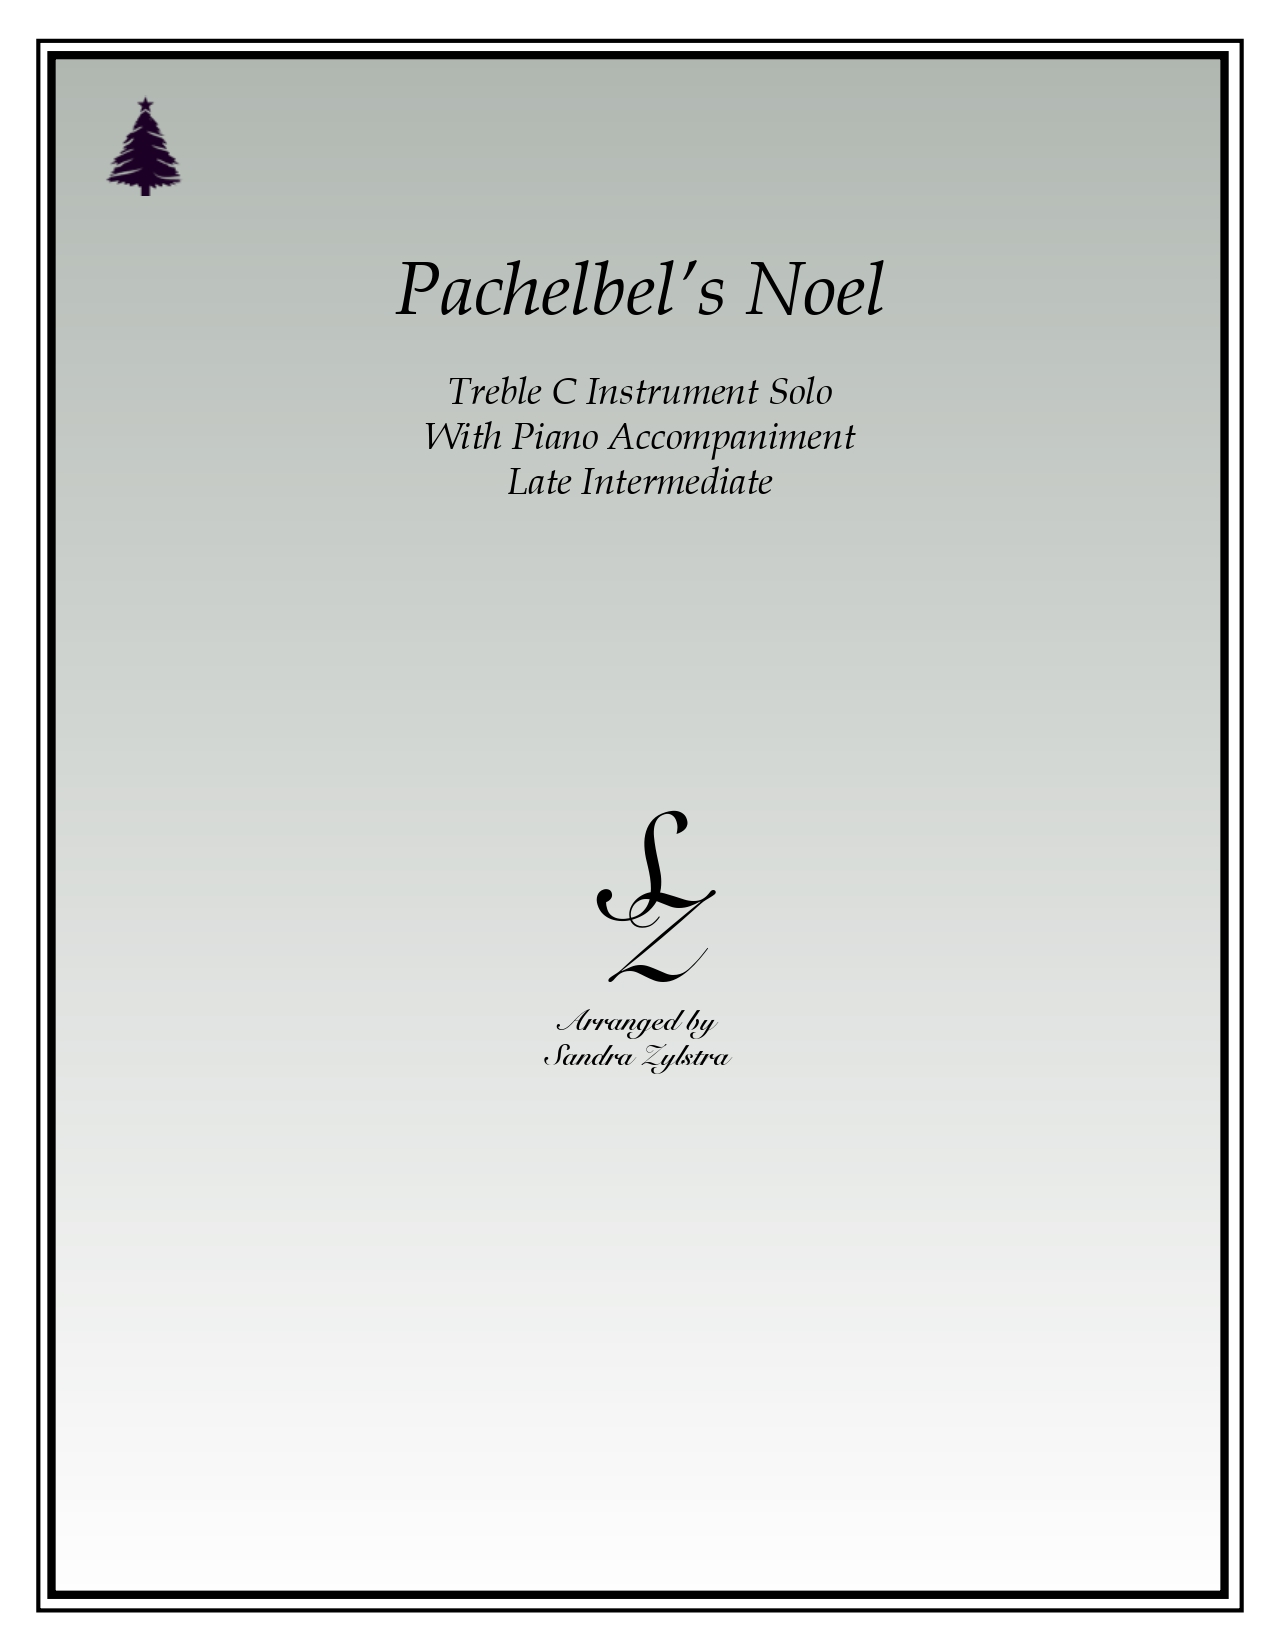 Pachelbels Noel treble C instrument solo part cover page 00011